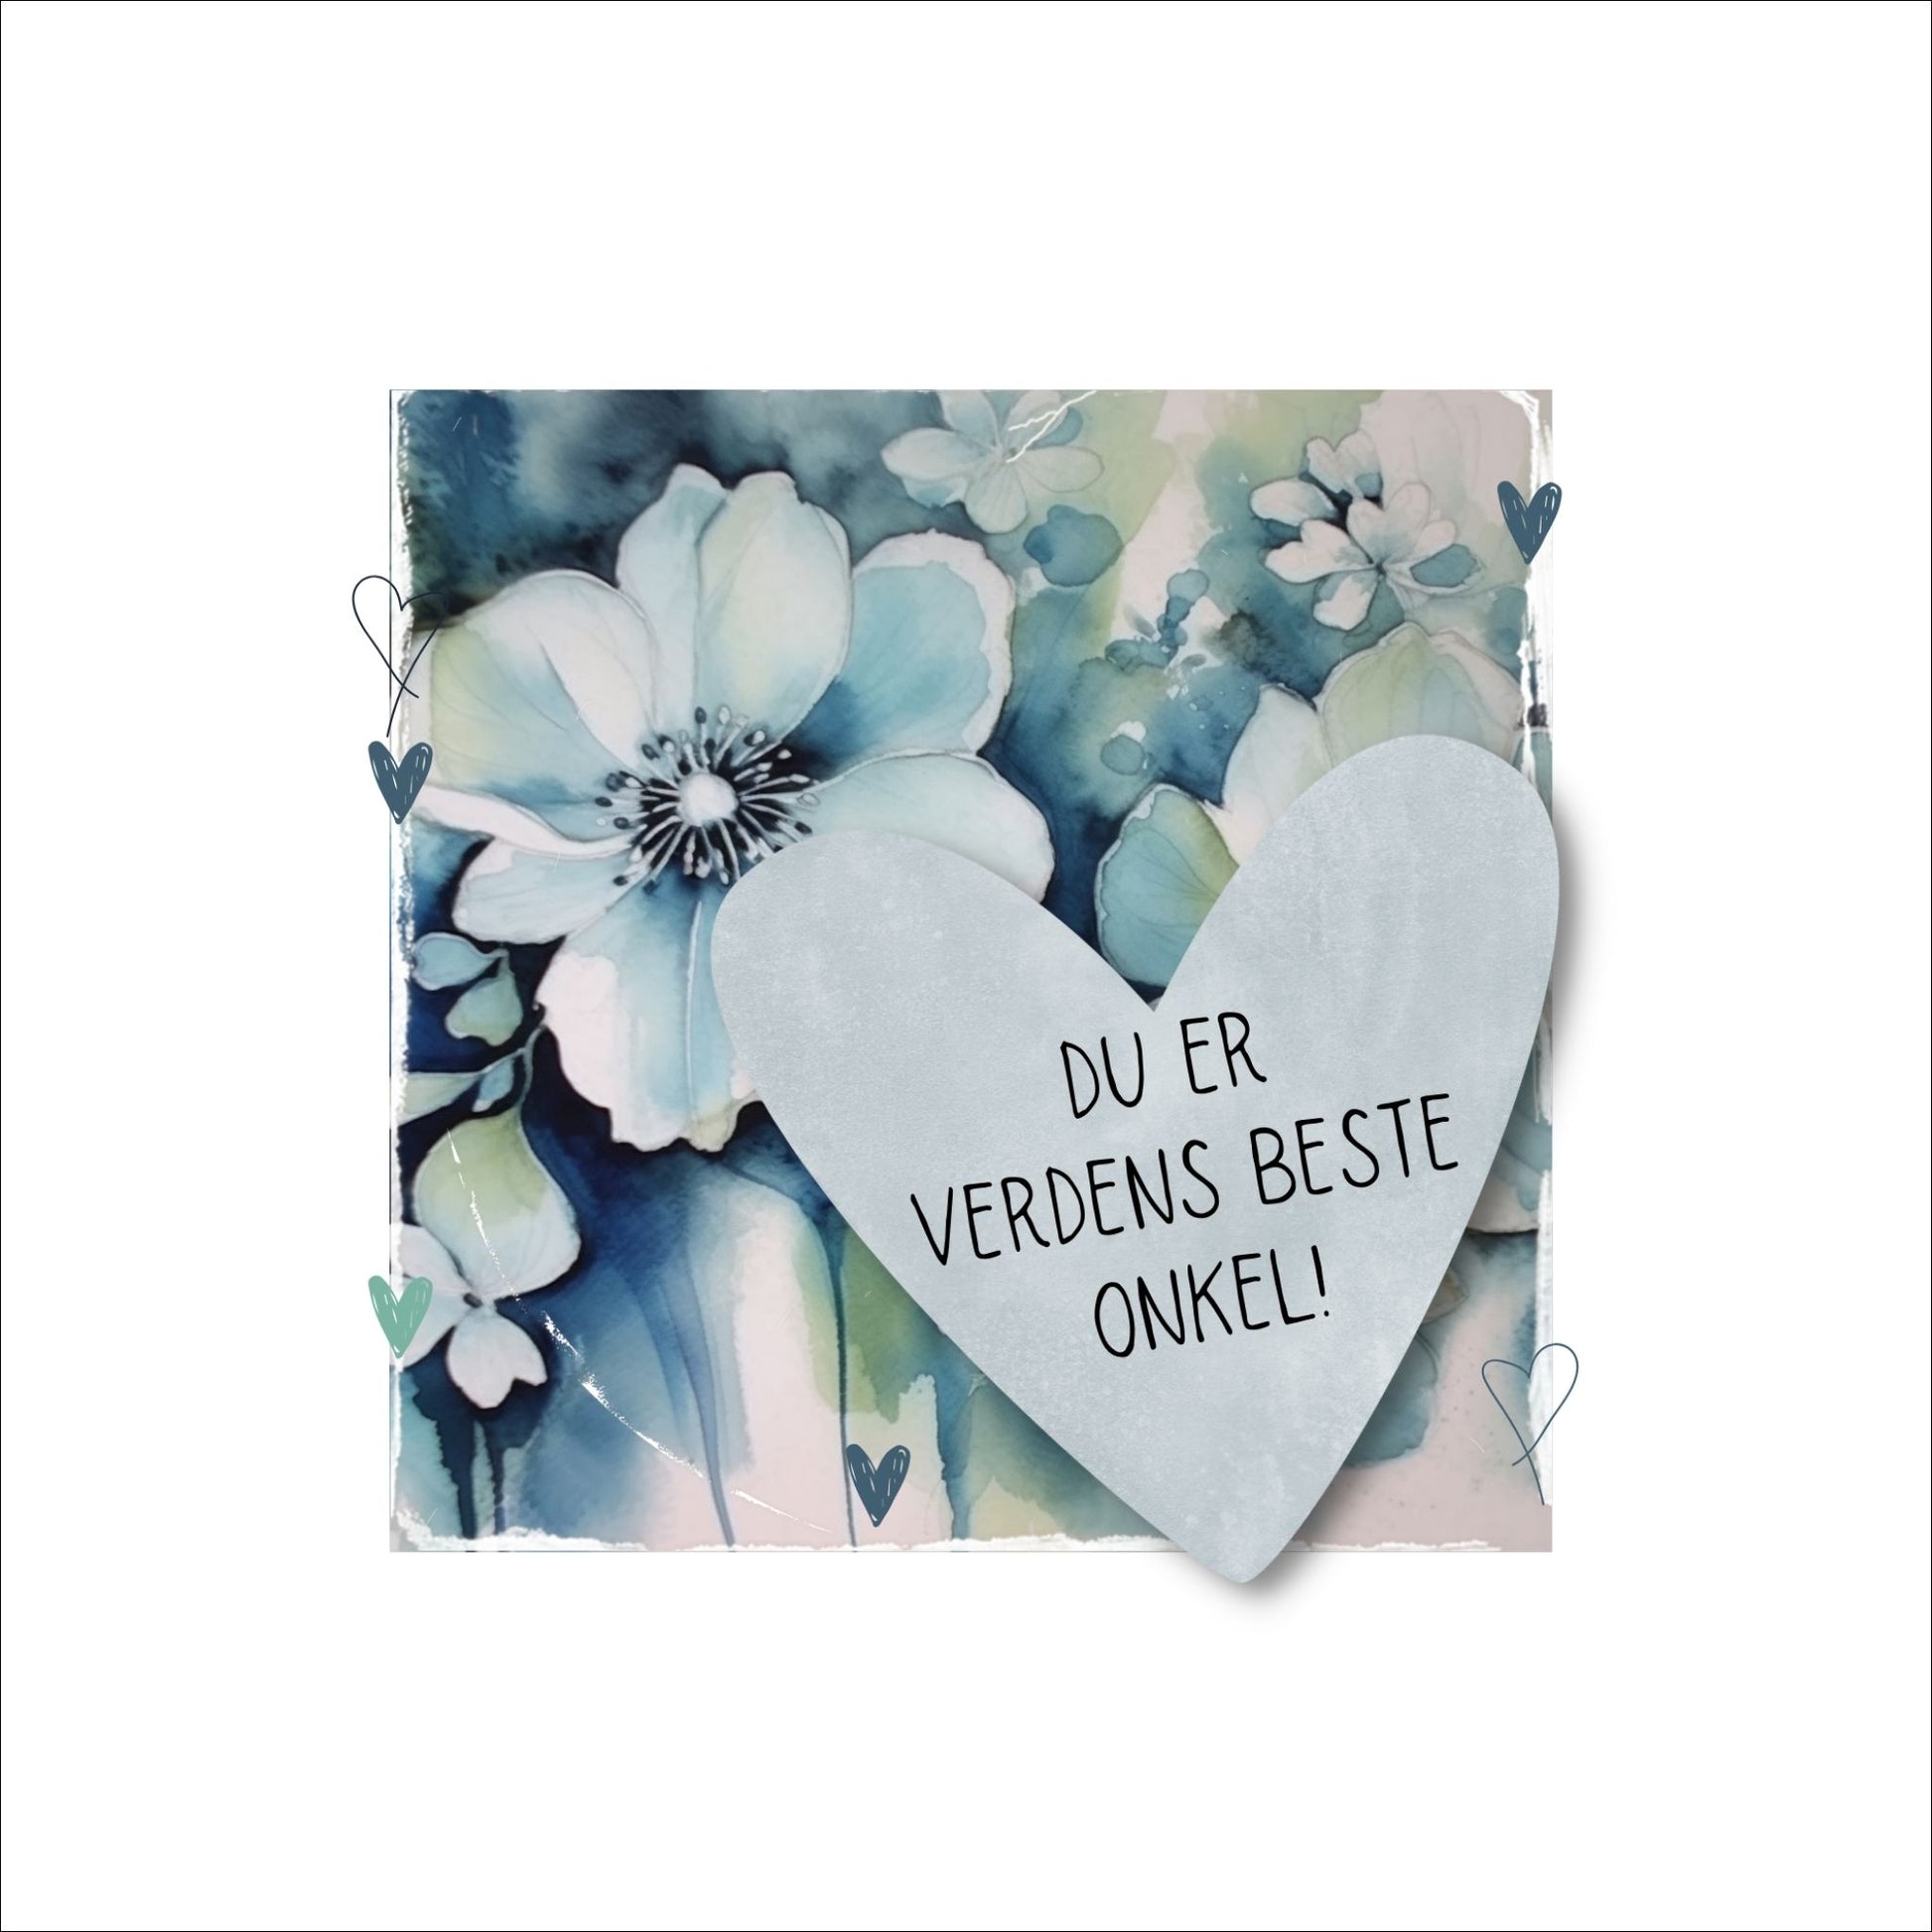 Grafisk plakat med et lyseblått hjerte påført tekst "Du er verdens beste onkel!". Bagrunn med blomster i blåtoner. Kortet har en hvit kant rundt på 4 cm.